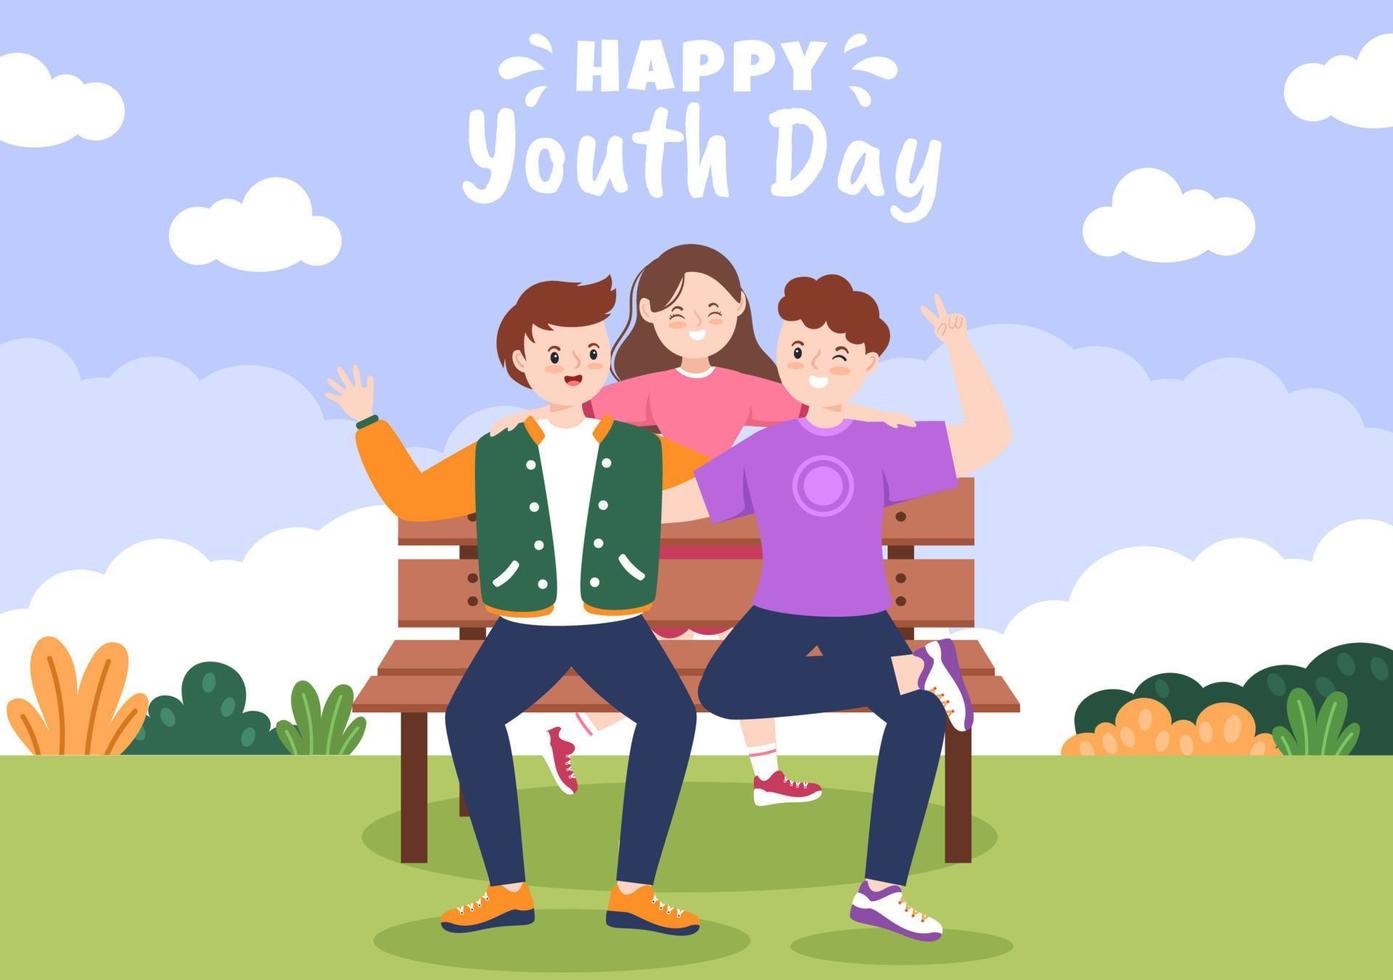 glad internationella ungdomsdagen söt tecknad illustration med unga pojkar och flickor för kampanj i platt stilbakgrund vektor